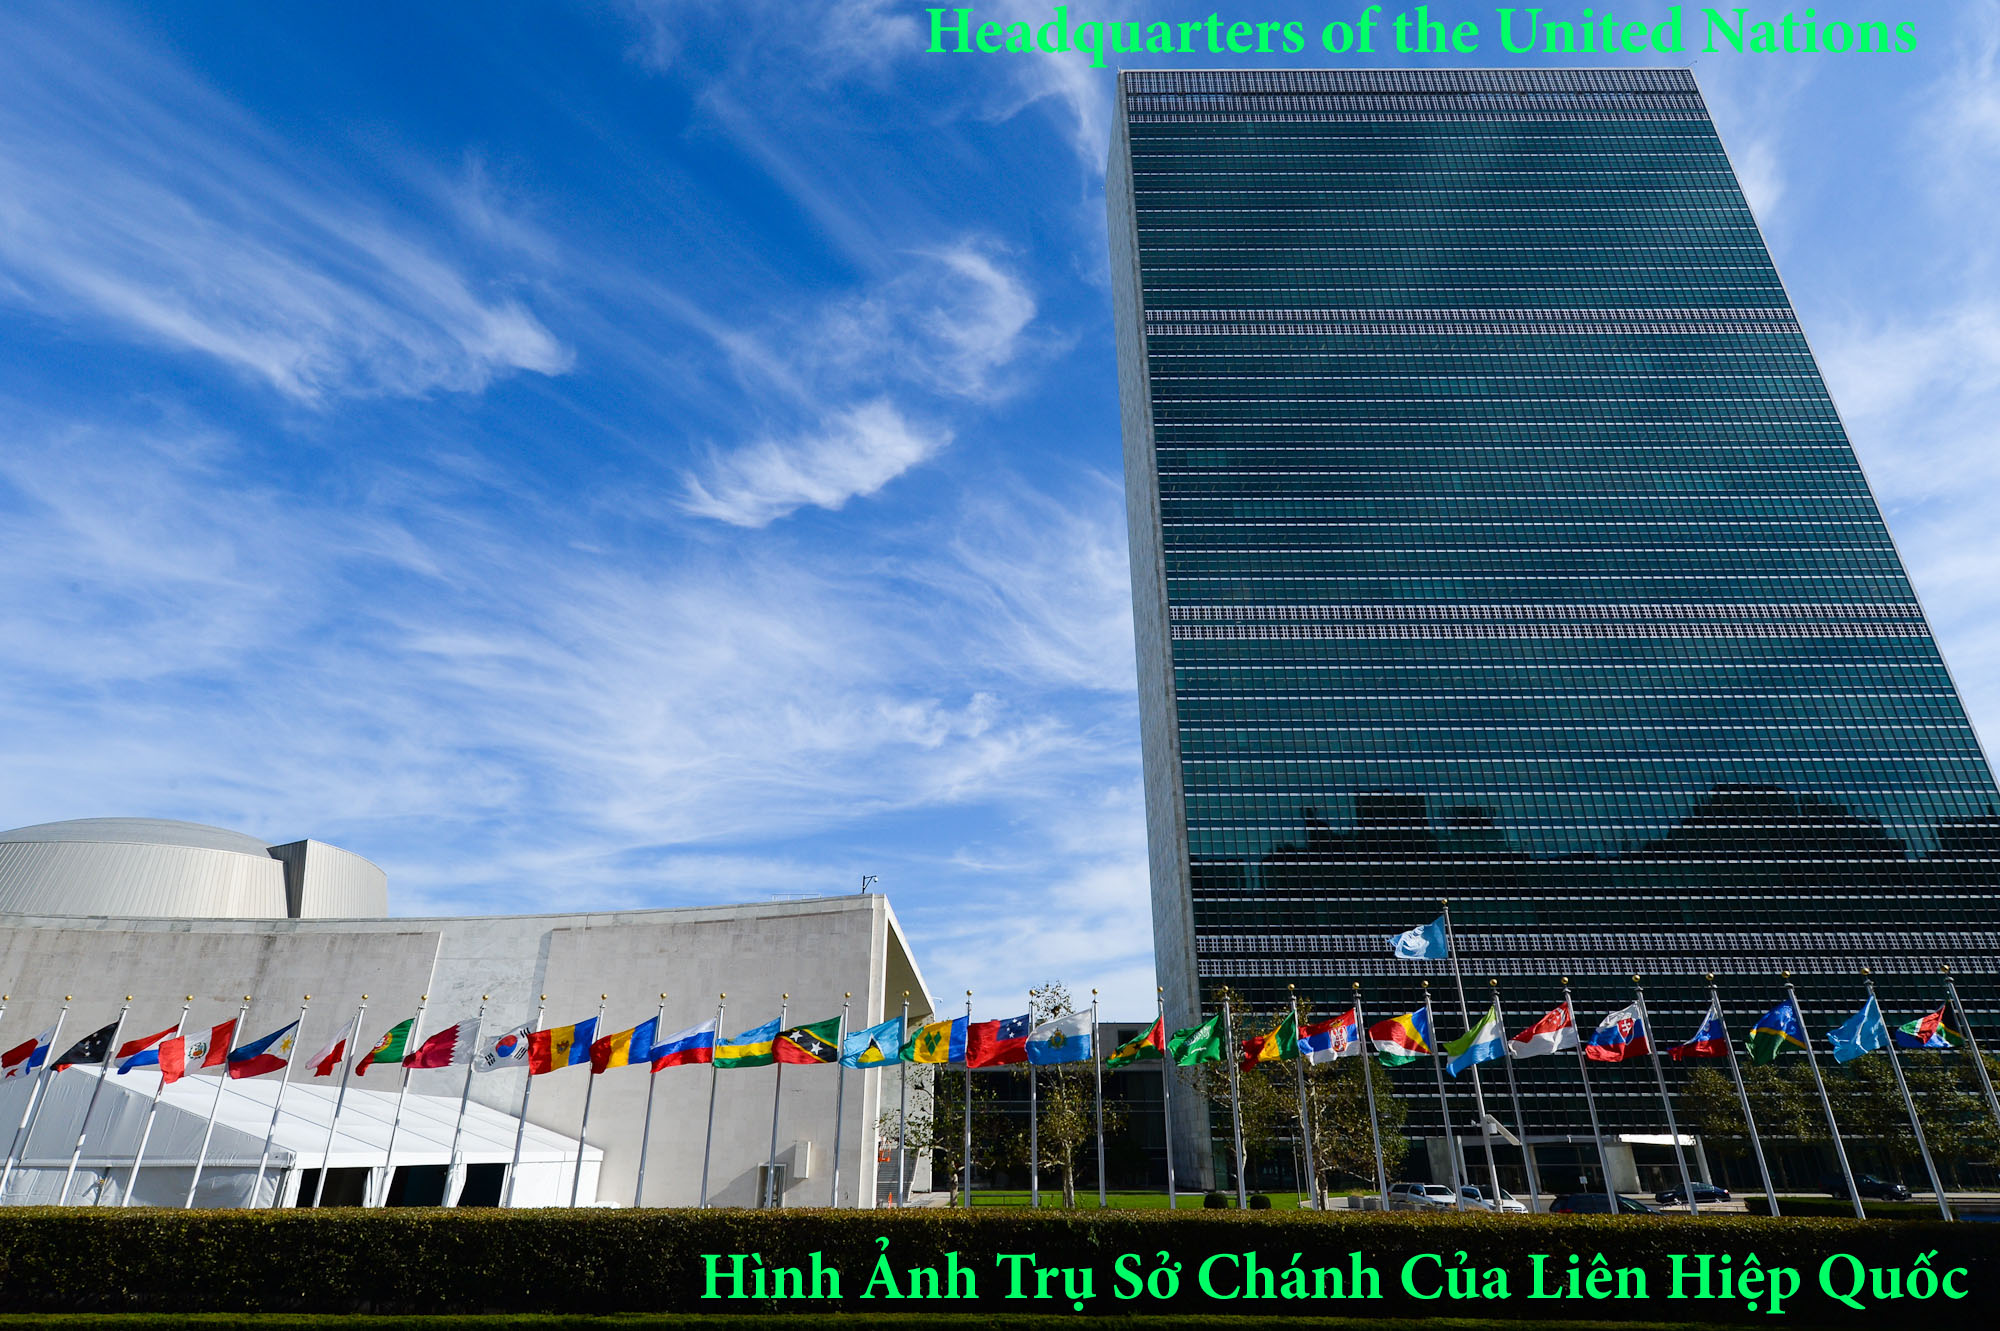 Headquarters of the United Nations - Trụ Sở Chánh/Tổng Hành Dinh Liên Hiệp Quốc